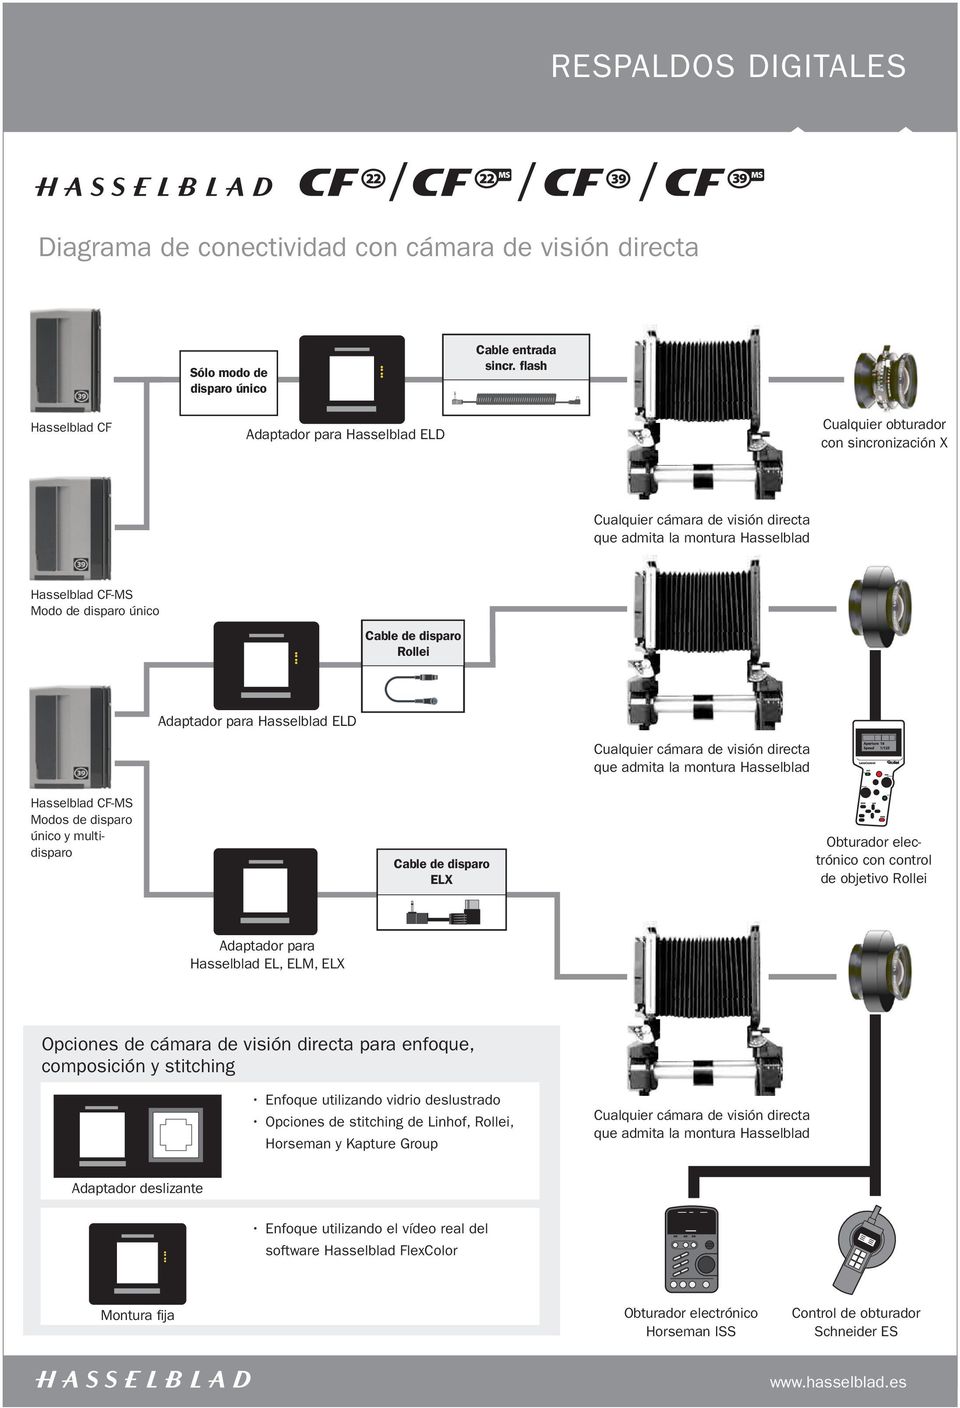 Modos de disparo único y multidisparo Cable de disparo ELX Obturador electrónico con control de objetivo Rollei Hasselblad EL, ELM, ELX Opciones de cámara de visión directa para enfoque, composición